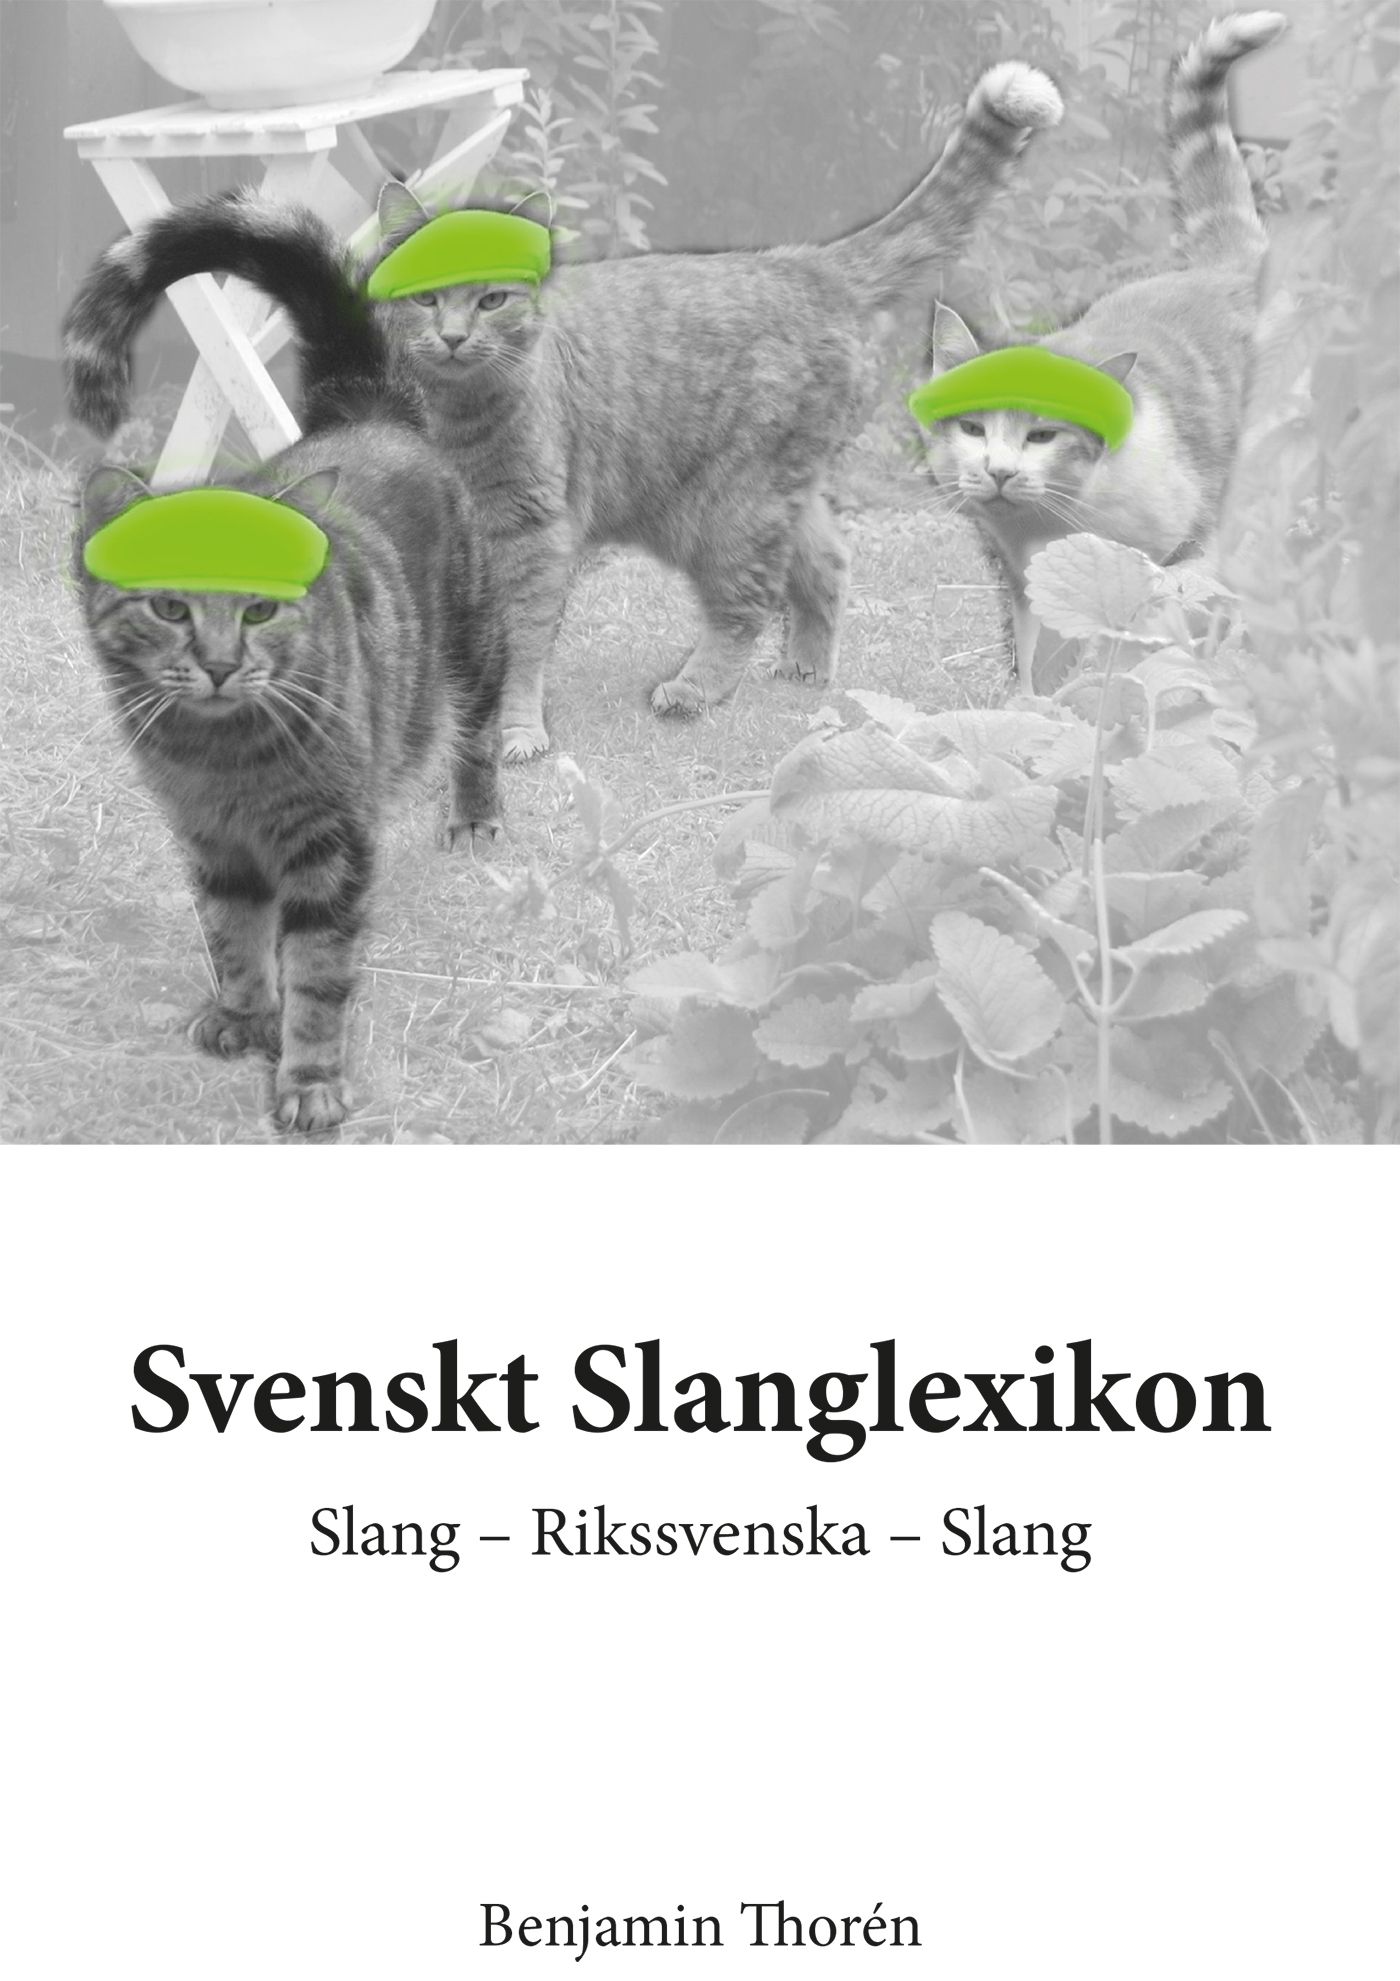 Svenskt Slanglexikon, eBook by Benjamin Thorén